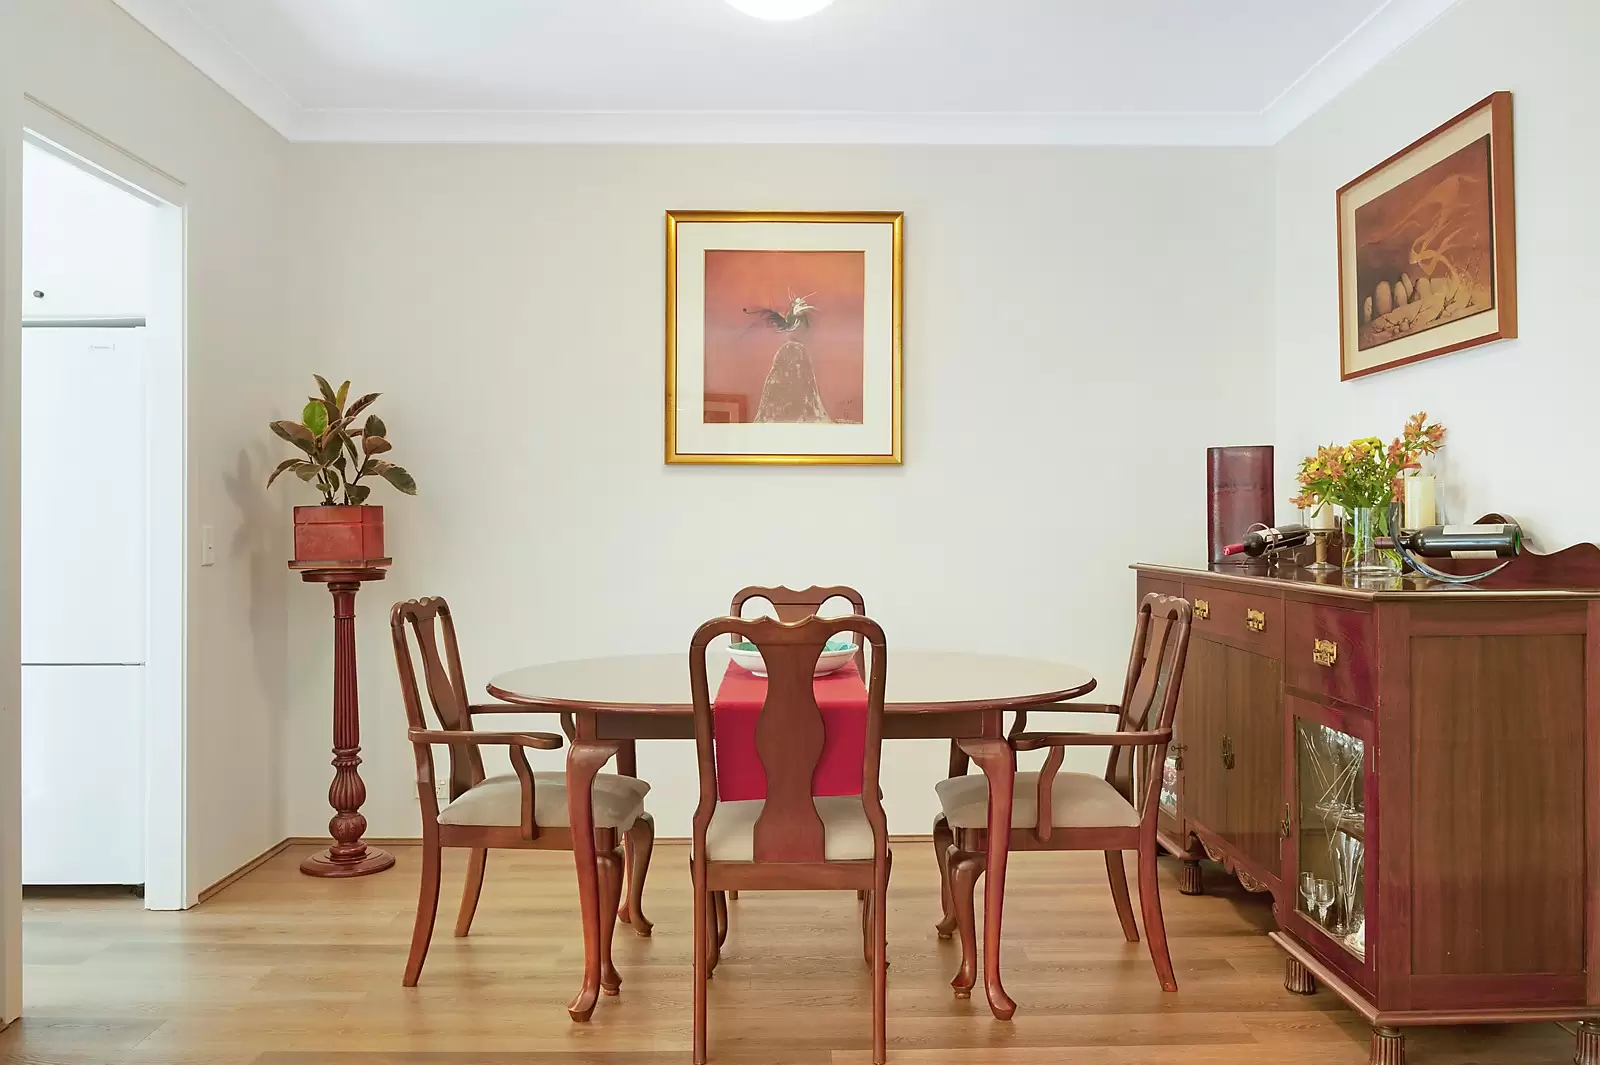 39/42 Lombard Street, Glebe Sold by Sydney Sotheby's International Realty - image 4